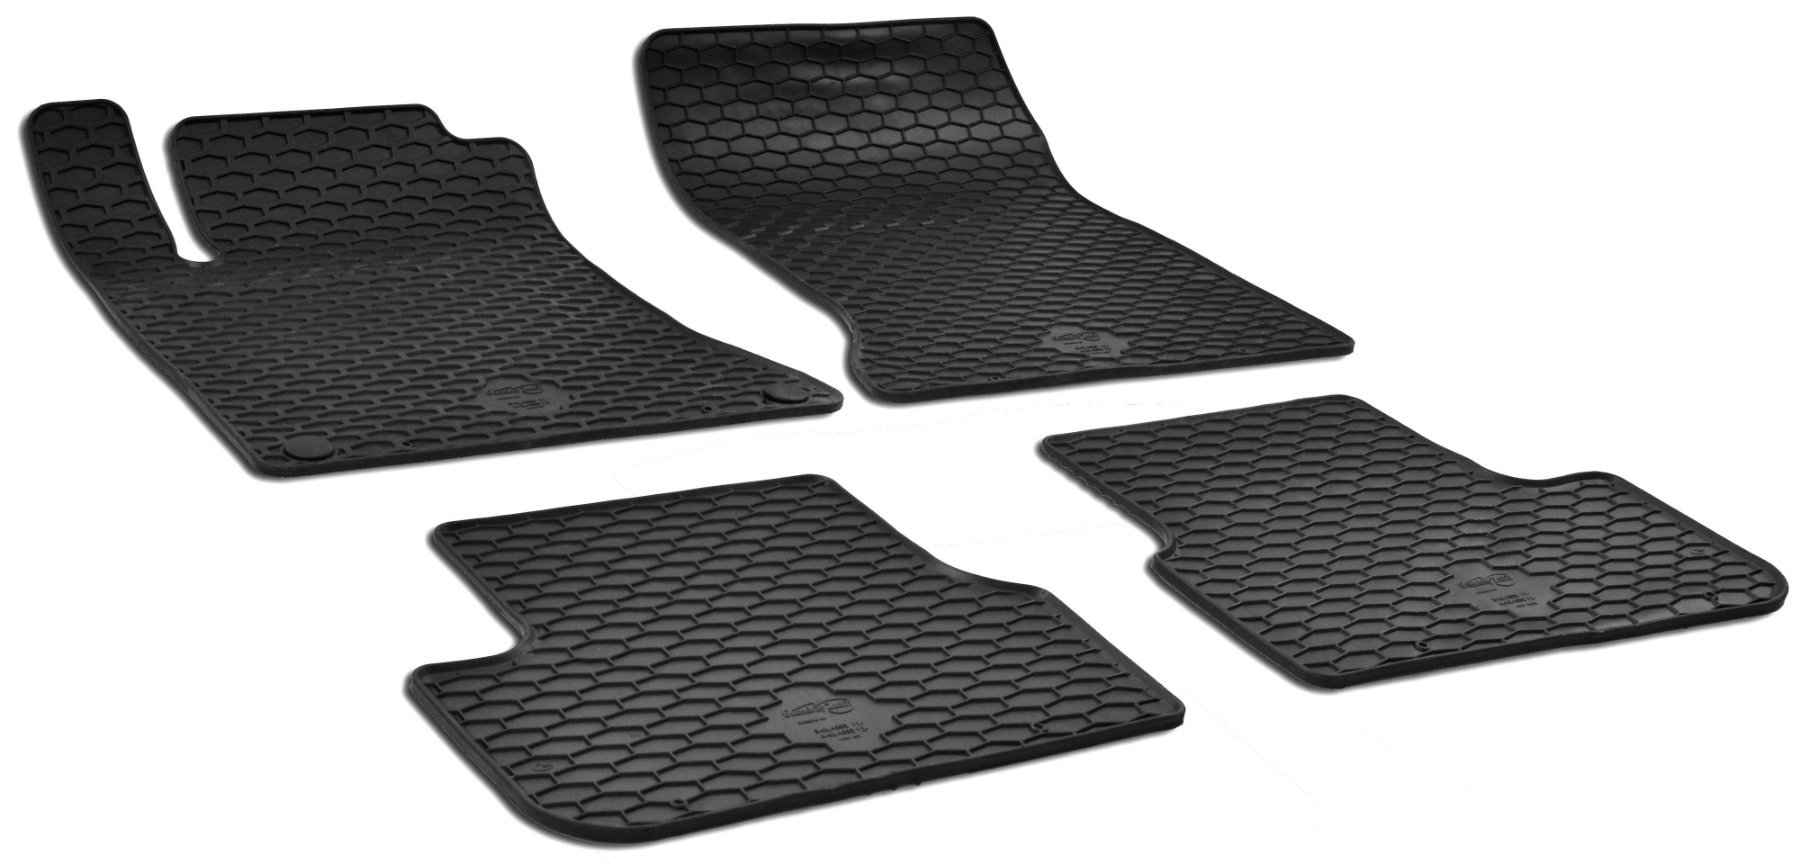 Rubber mats DirtGuard for Mercedes-Benz CLA Coupe, GLA-Class, A-Class, B-Class